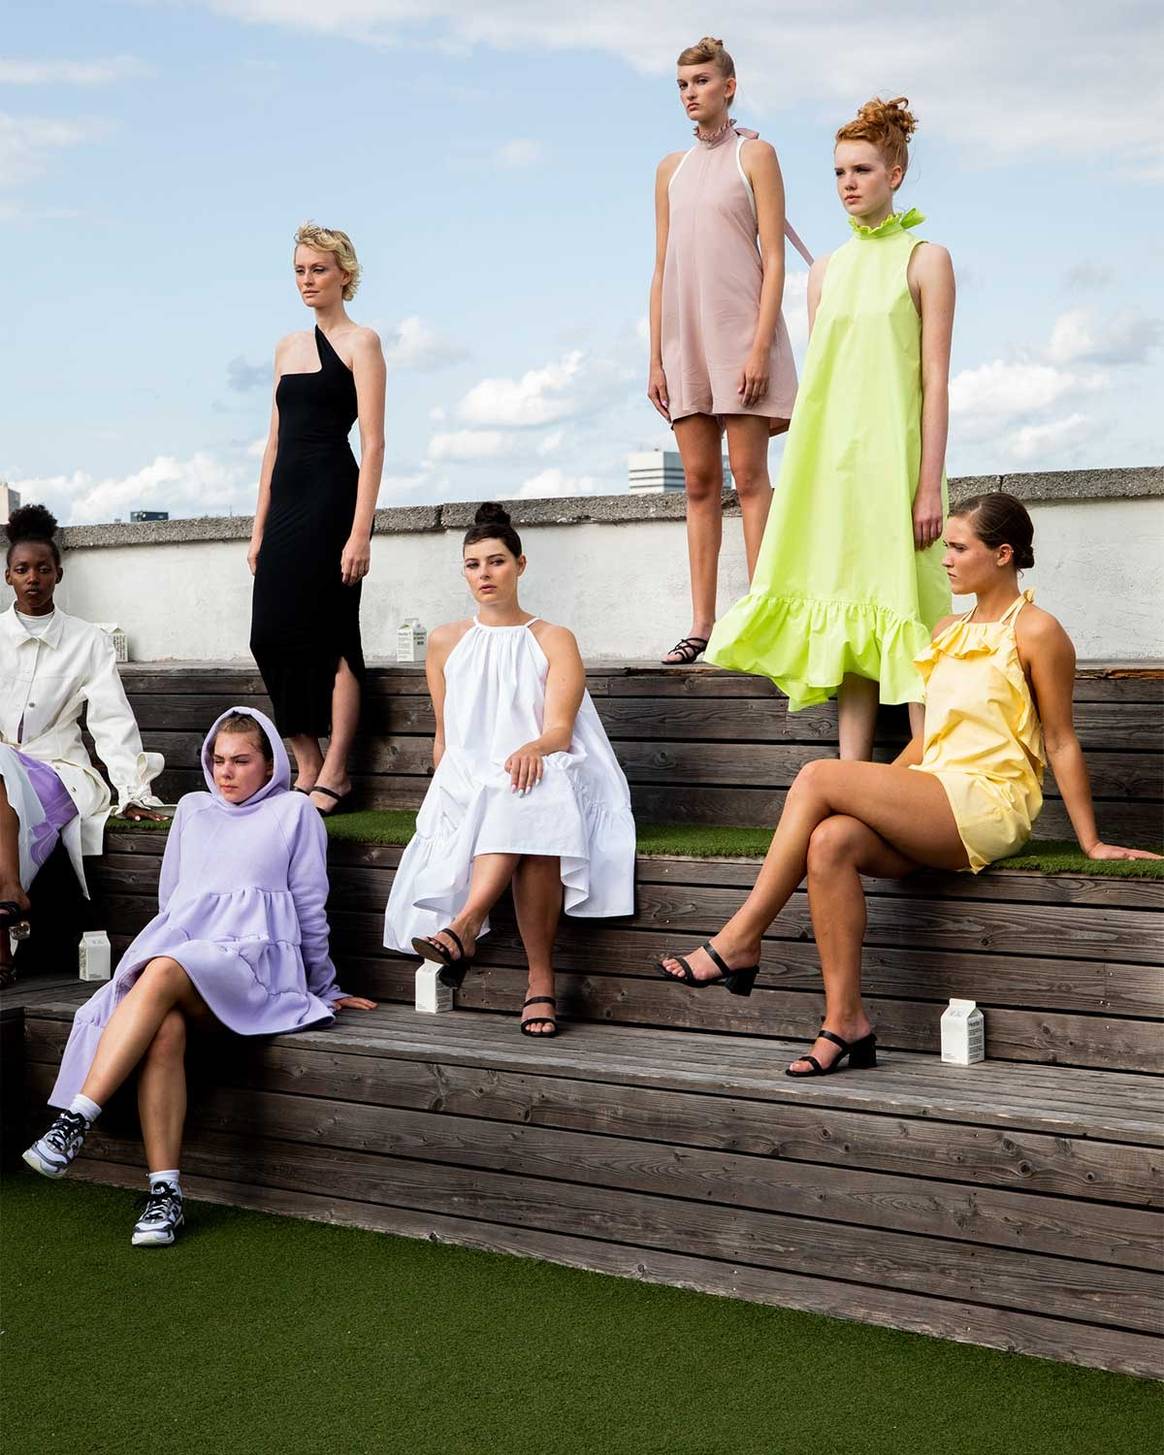 Copenhague Fashion Week: La moda escandinava que viene